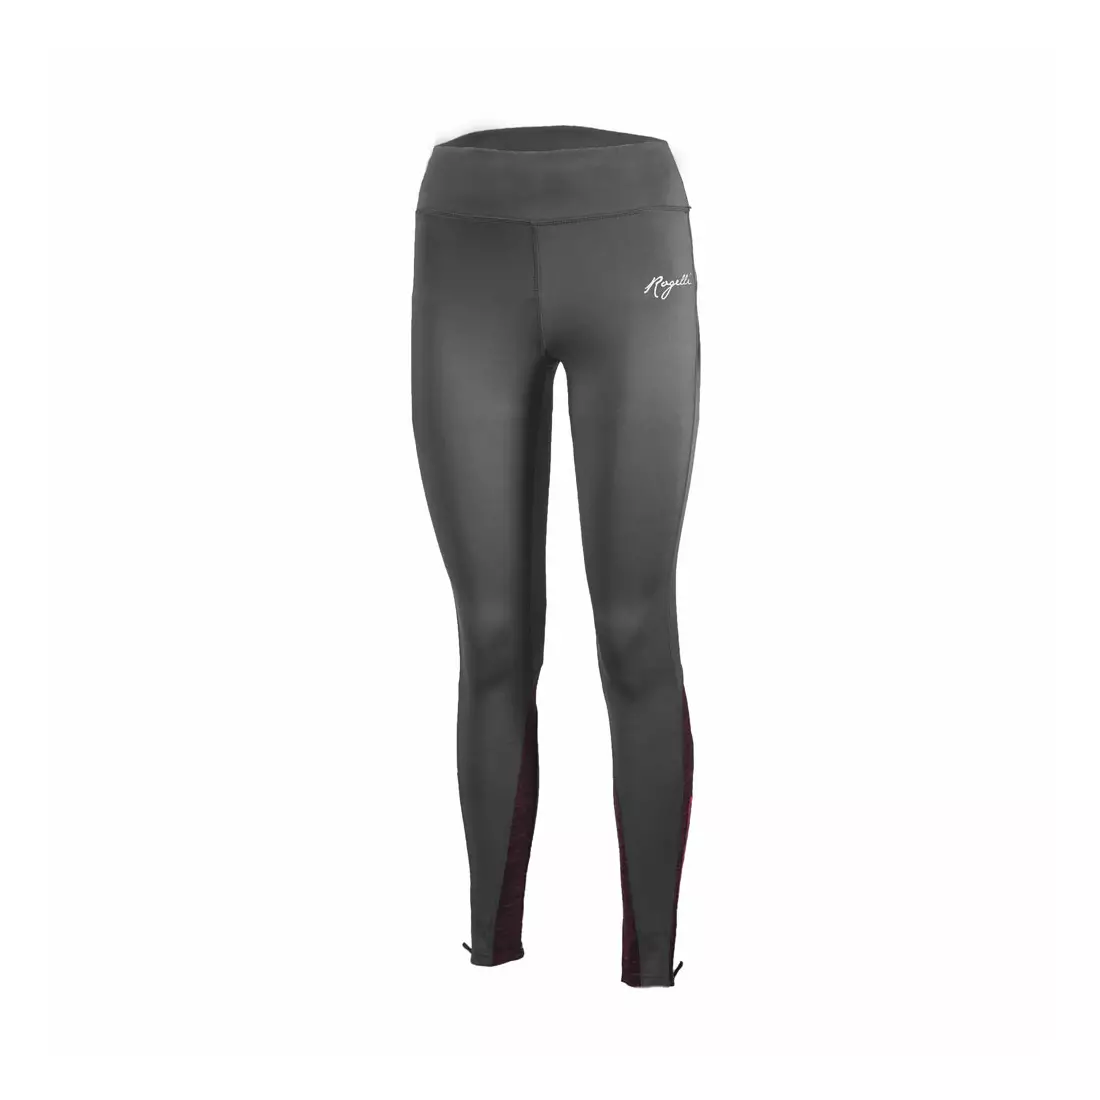 ROGELLI RUN - ELEGANCE 840.763 women's insulated running pants, gray